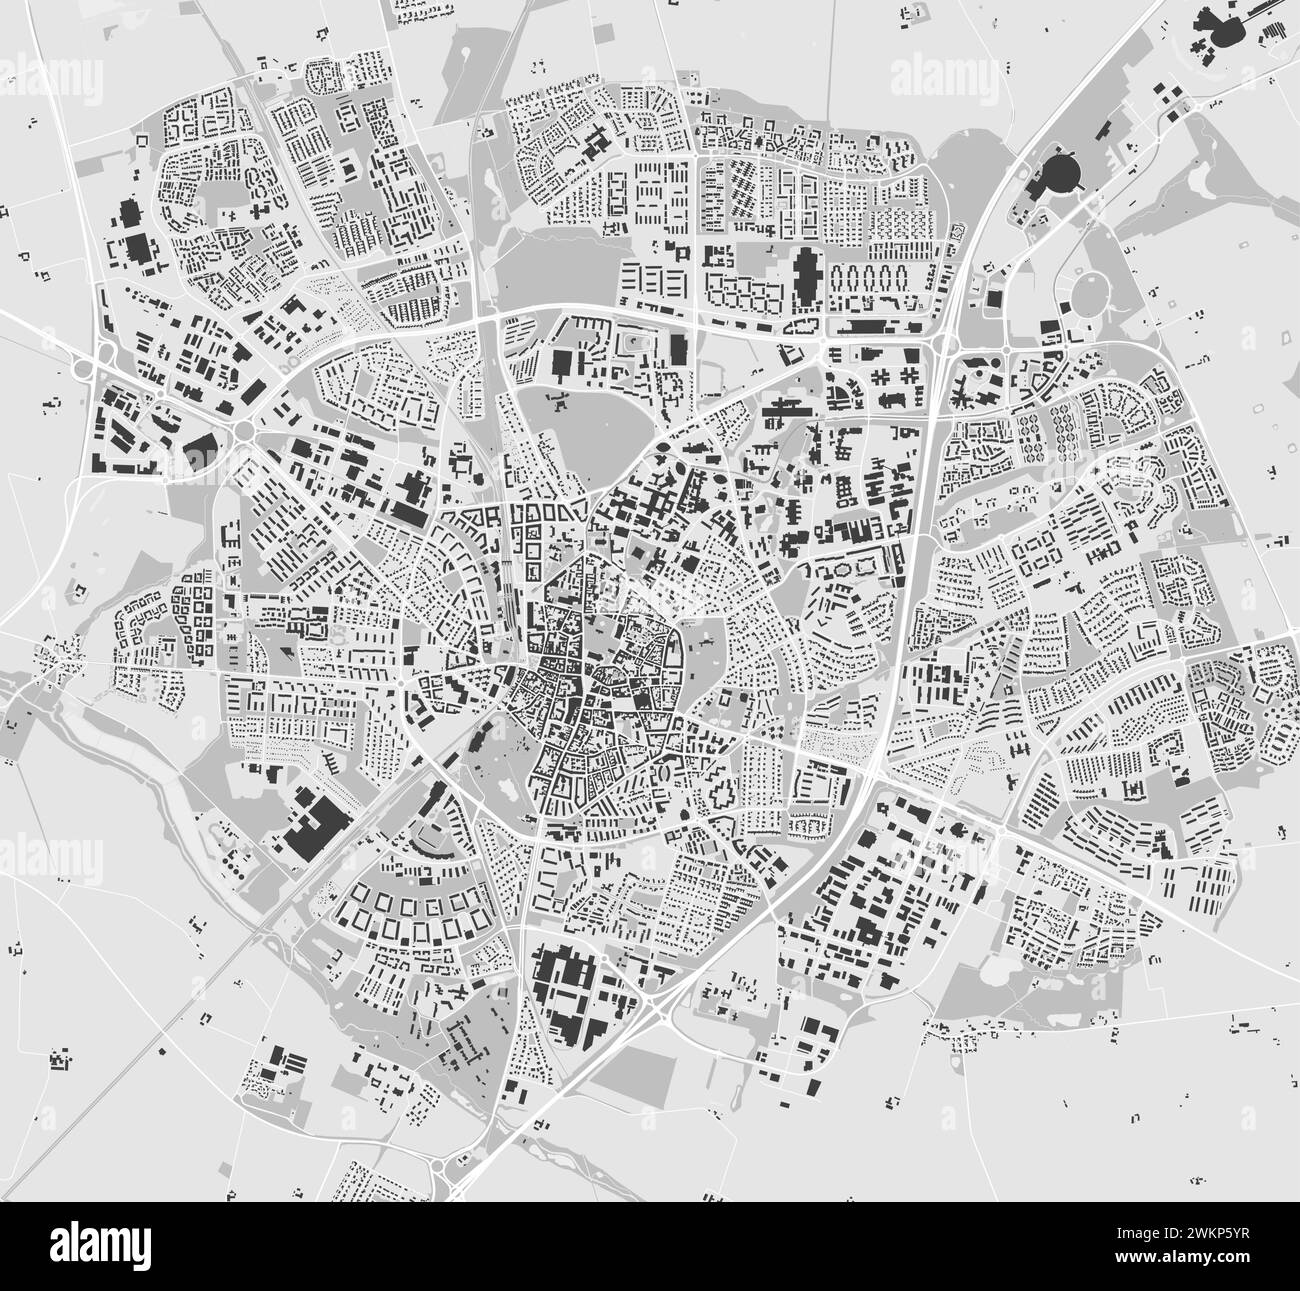 Lund Karte, Schweden. Stadtkarte in Graustufen, Straßenkarte im Vektor mit Straßen und Flüssen. Stock Vektor